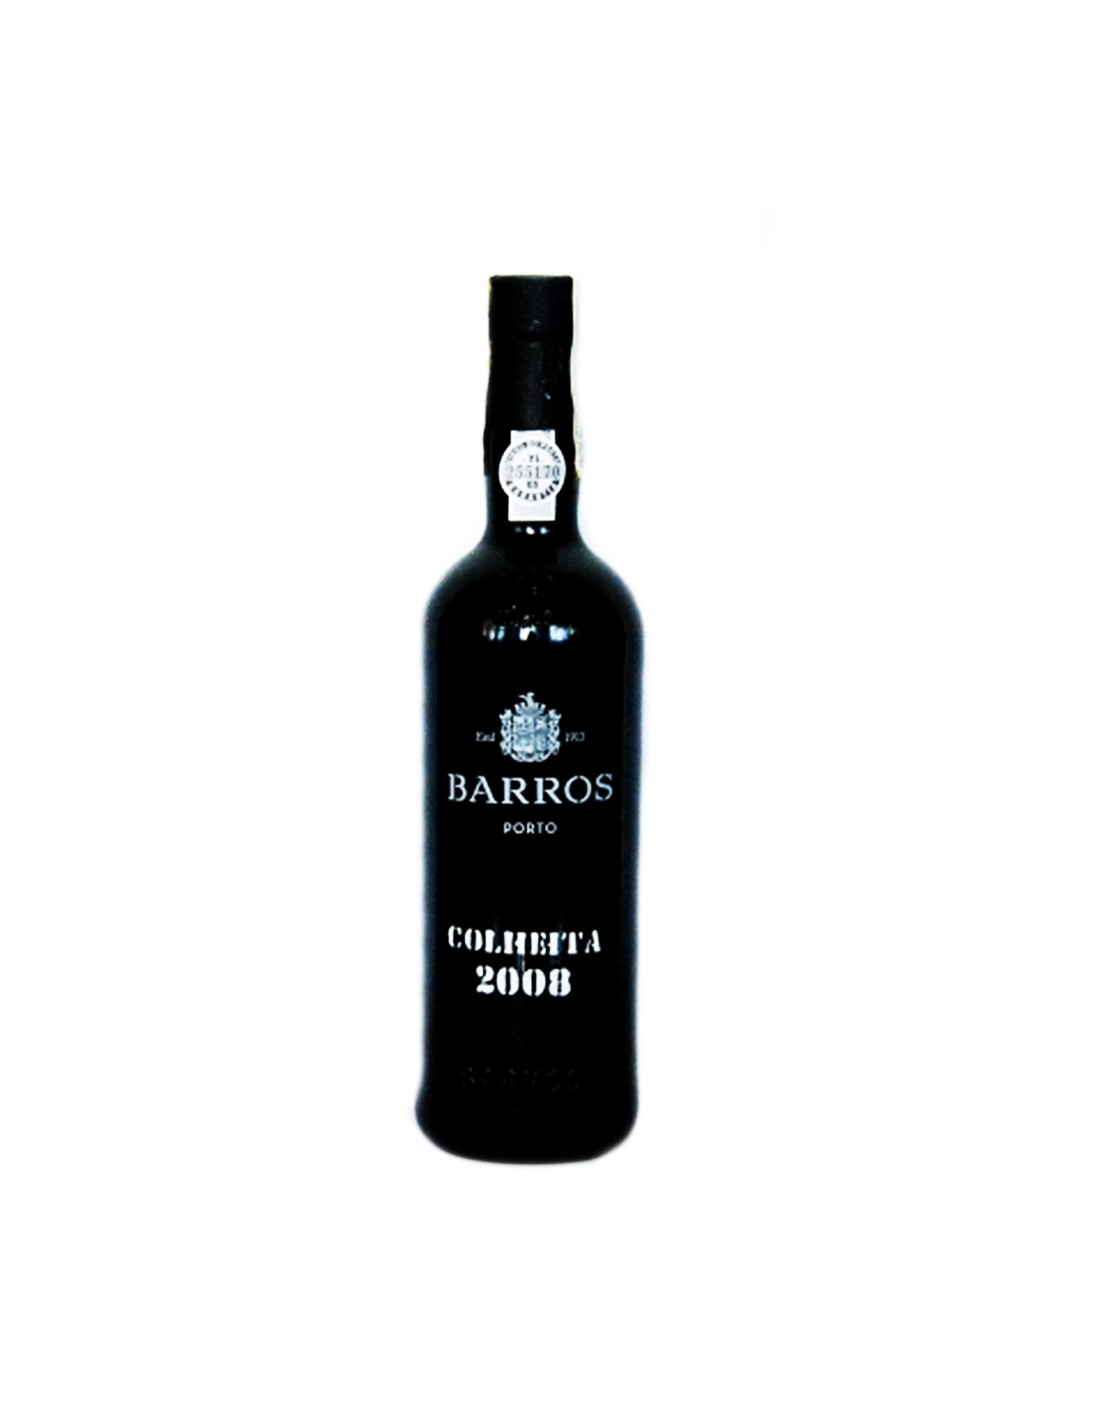 Vin porto roze dulce, Cupaj, Barros Colheita 2008, 20% alc., 0.75L, Portugalia alcooldiscount.ro